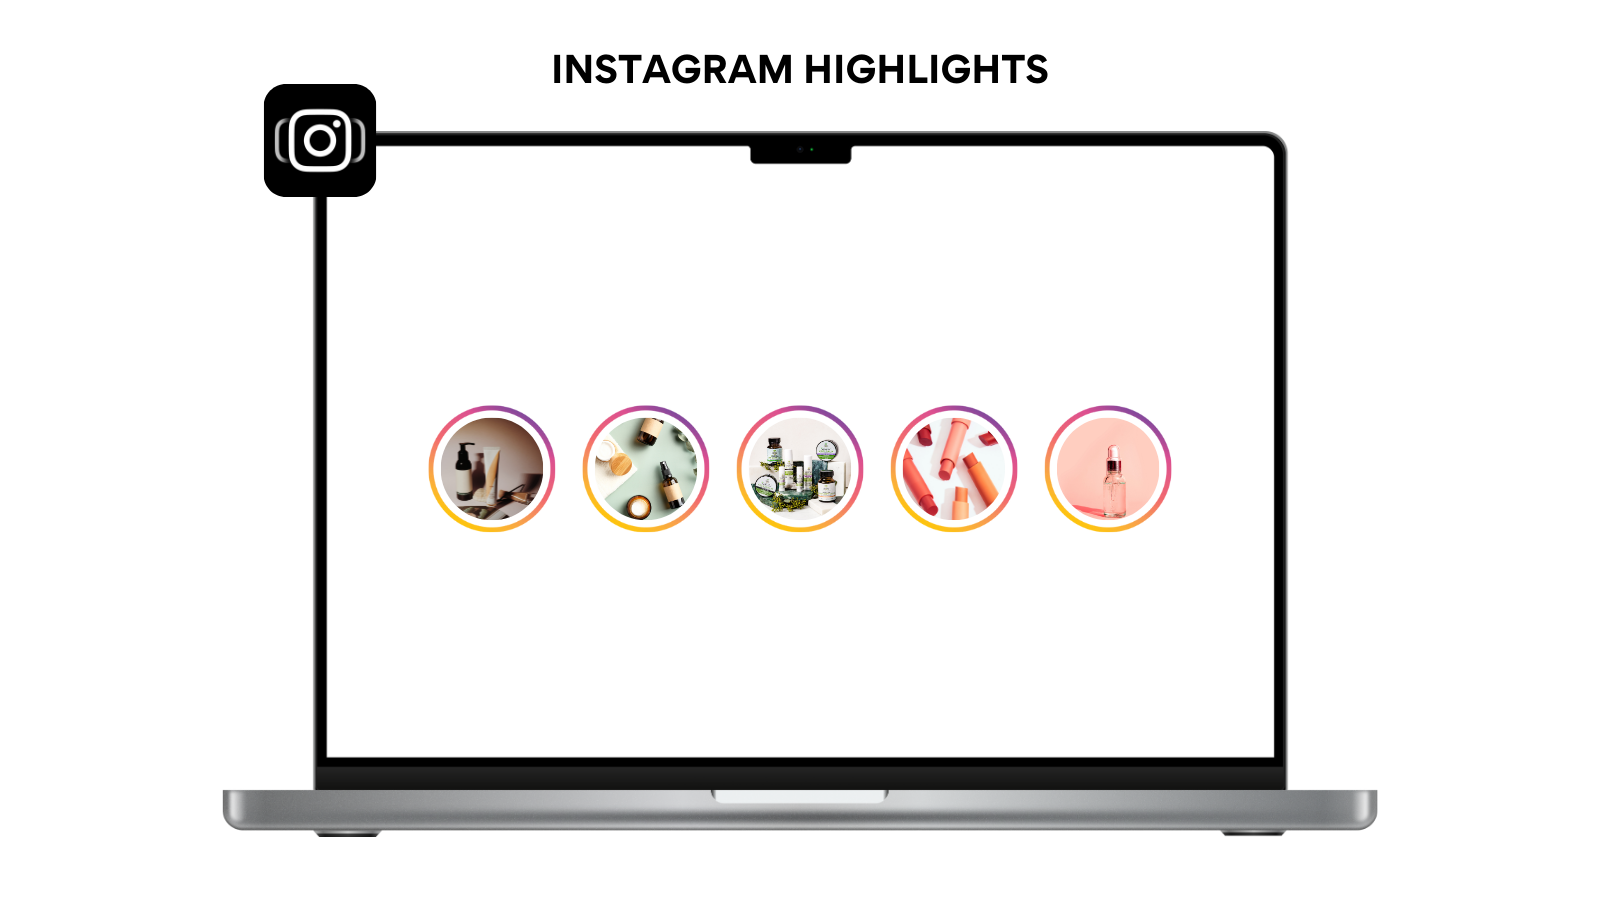 Instafeed - Instagram Feed, Instagram Stories, Instagram Reels